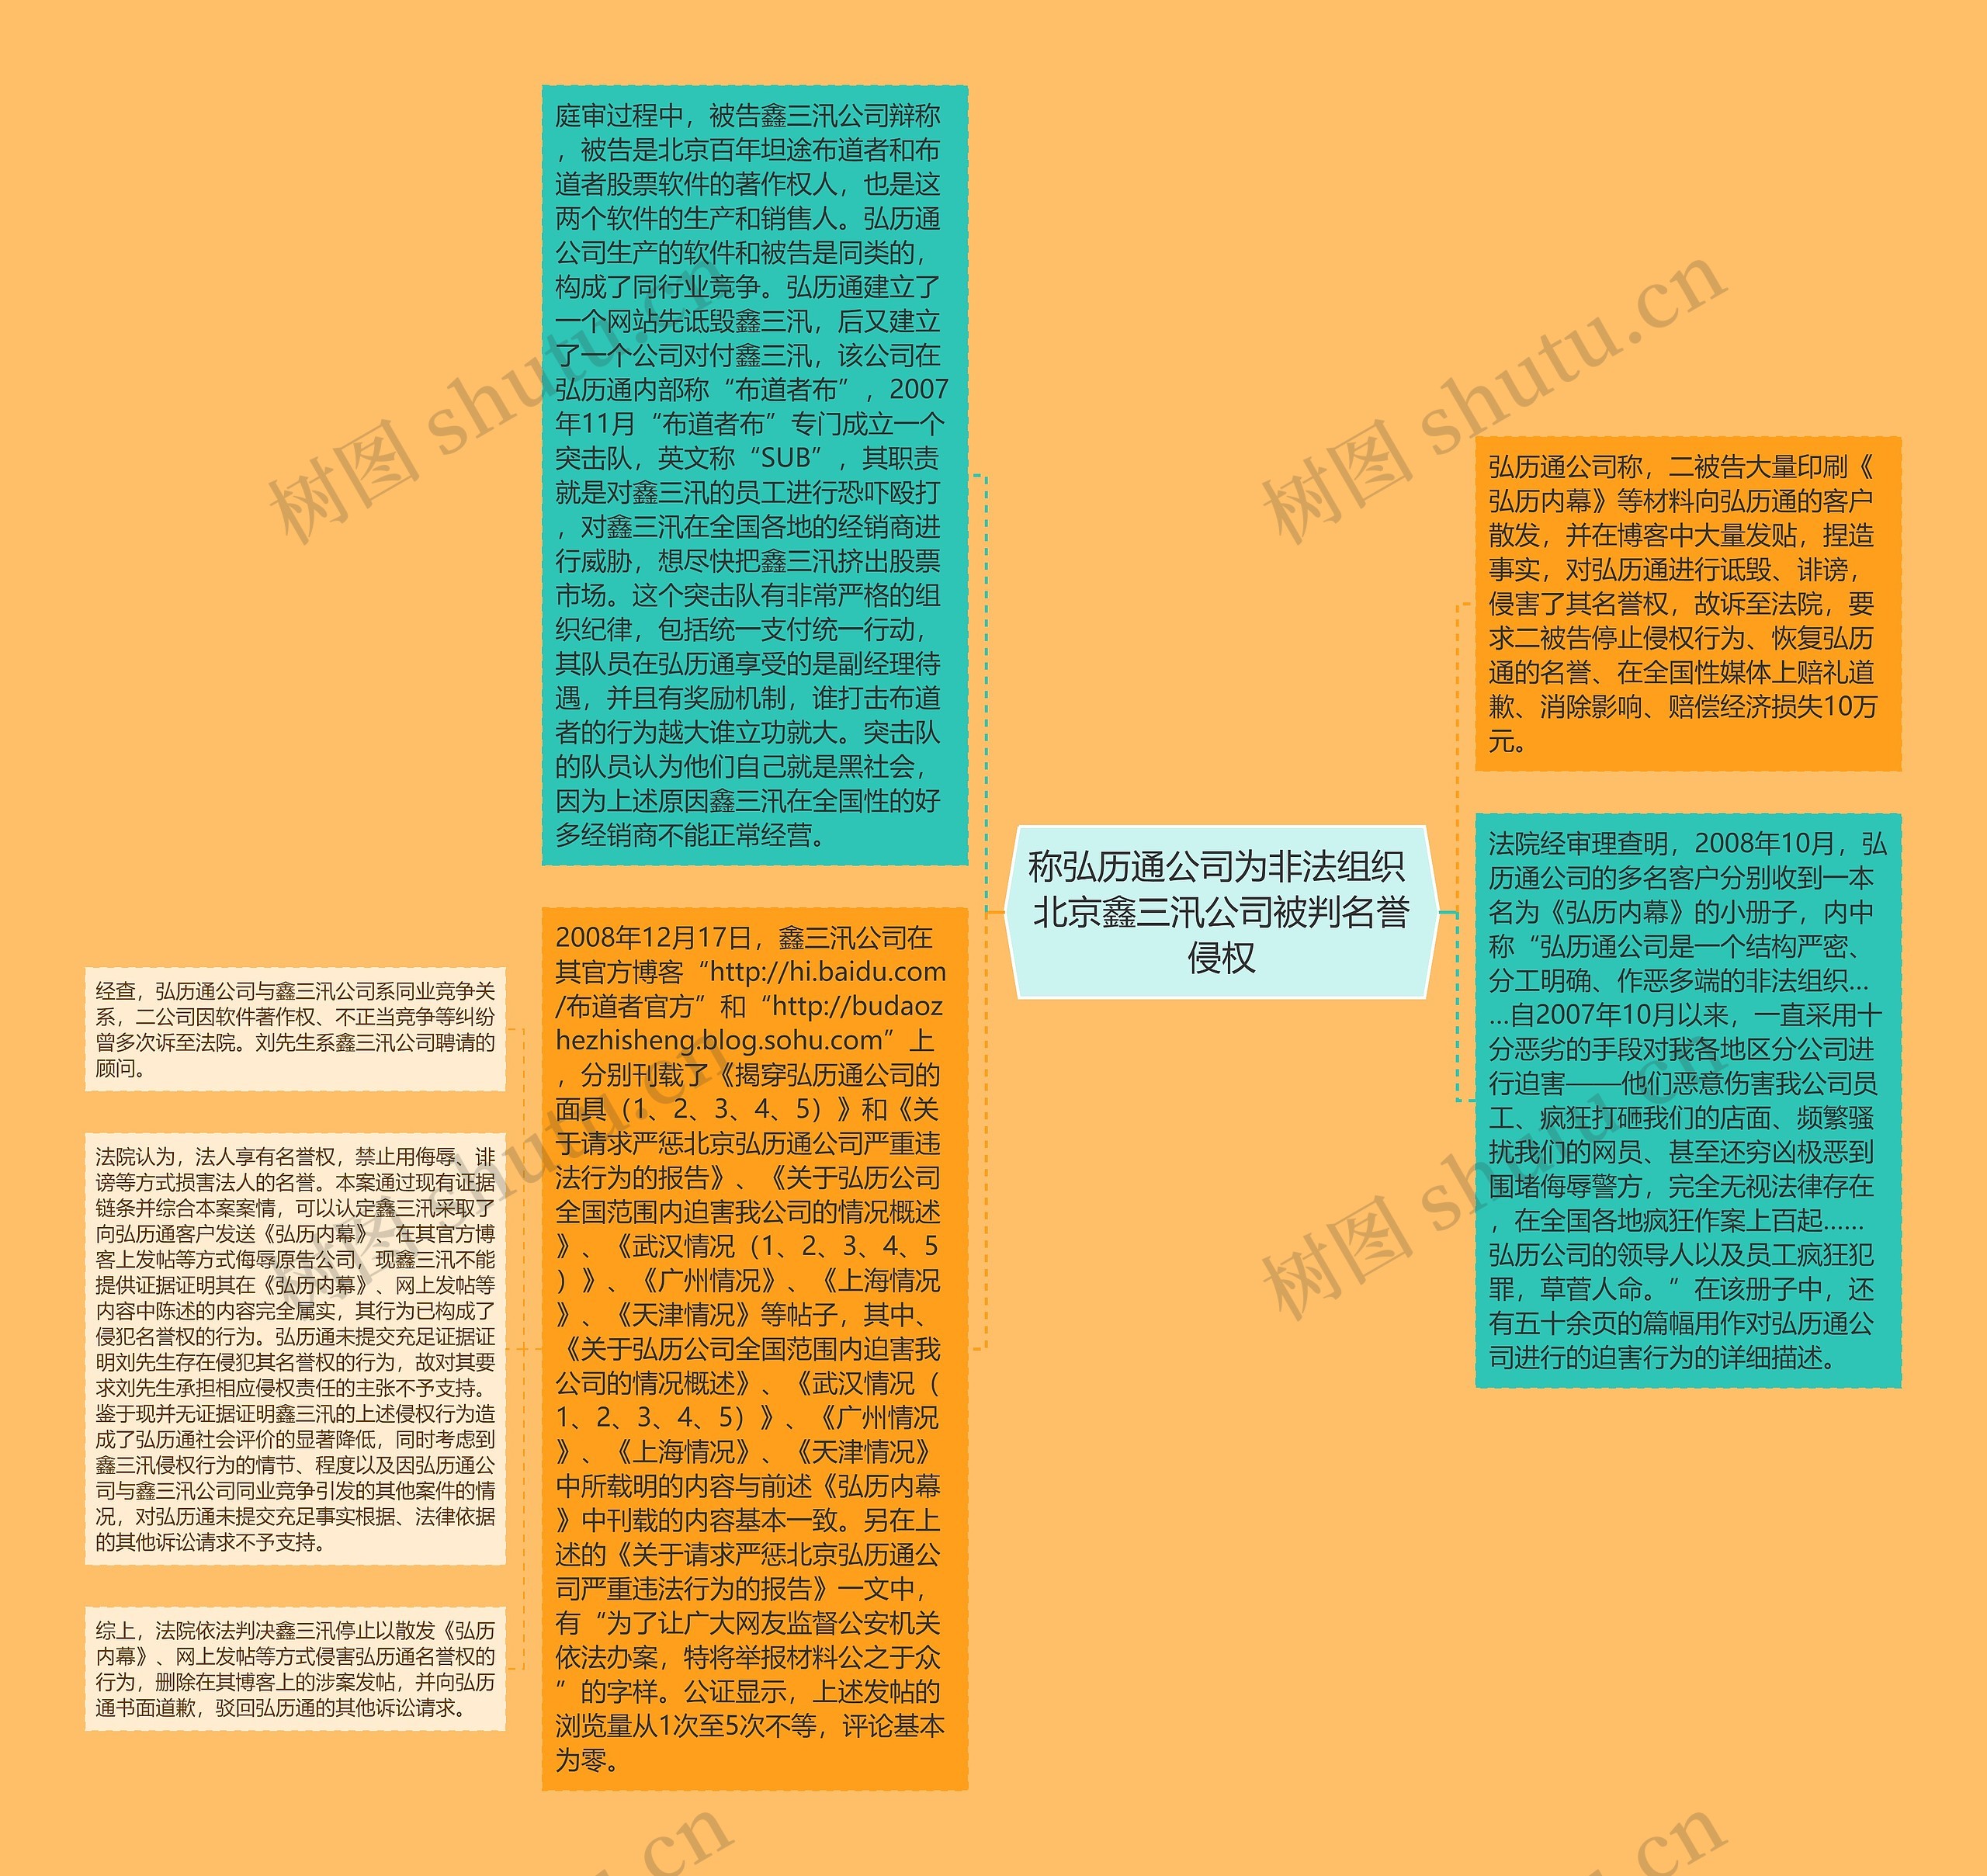 称弘历通公司为非法组织 北京鑫三汛公司被判名誉侵权思维导图